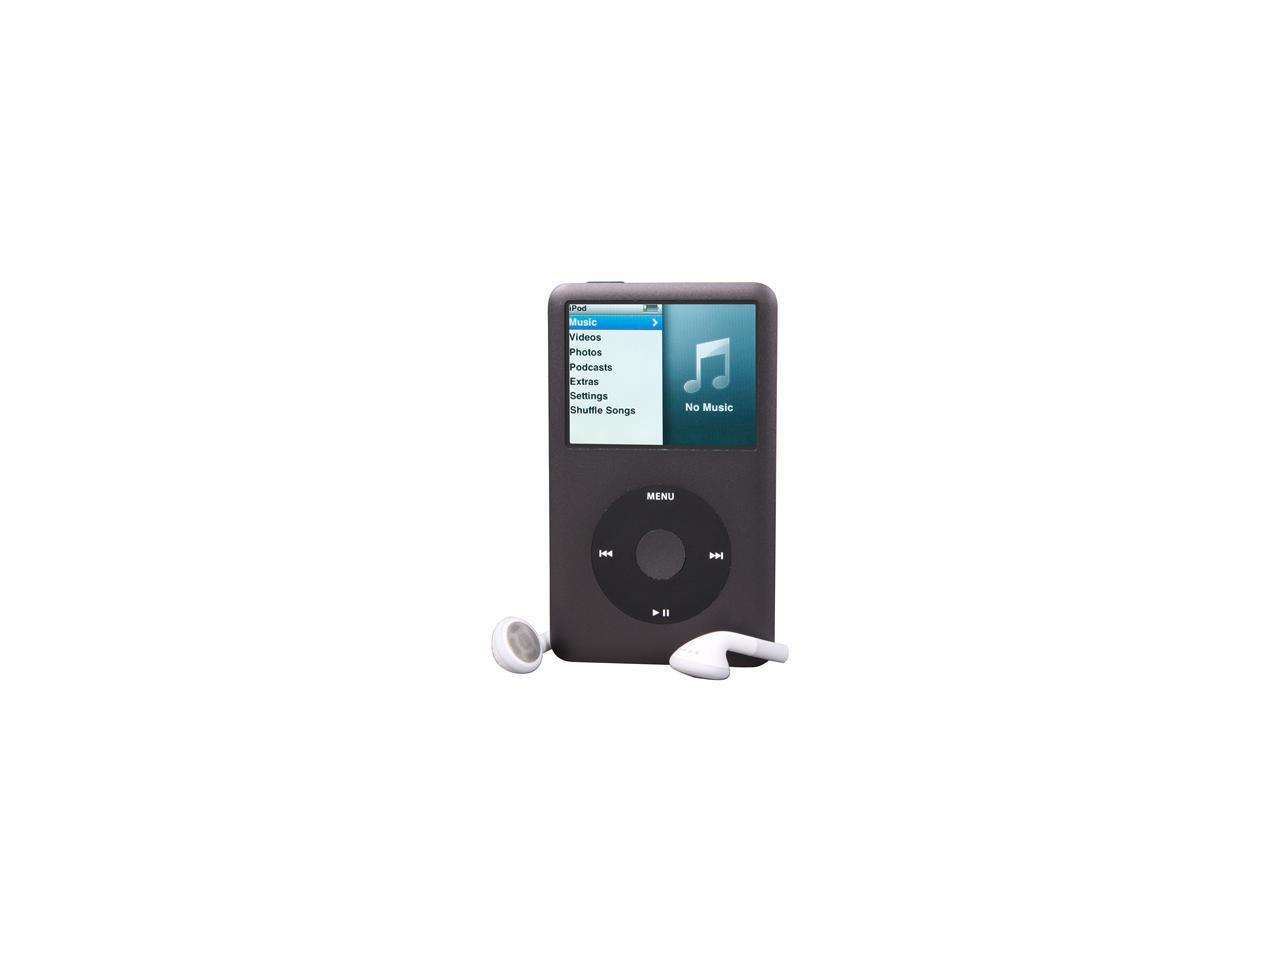 オーディオ機器 ポータブルプレーヤー Apple MC297LL/A - iPod Classic 160GB (BLACK) - Newegg.com